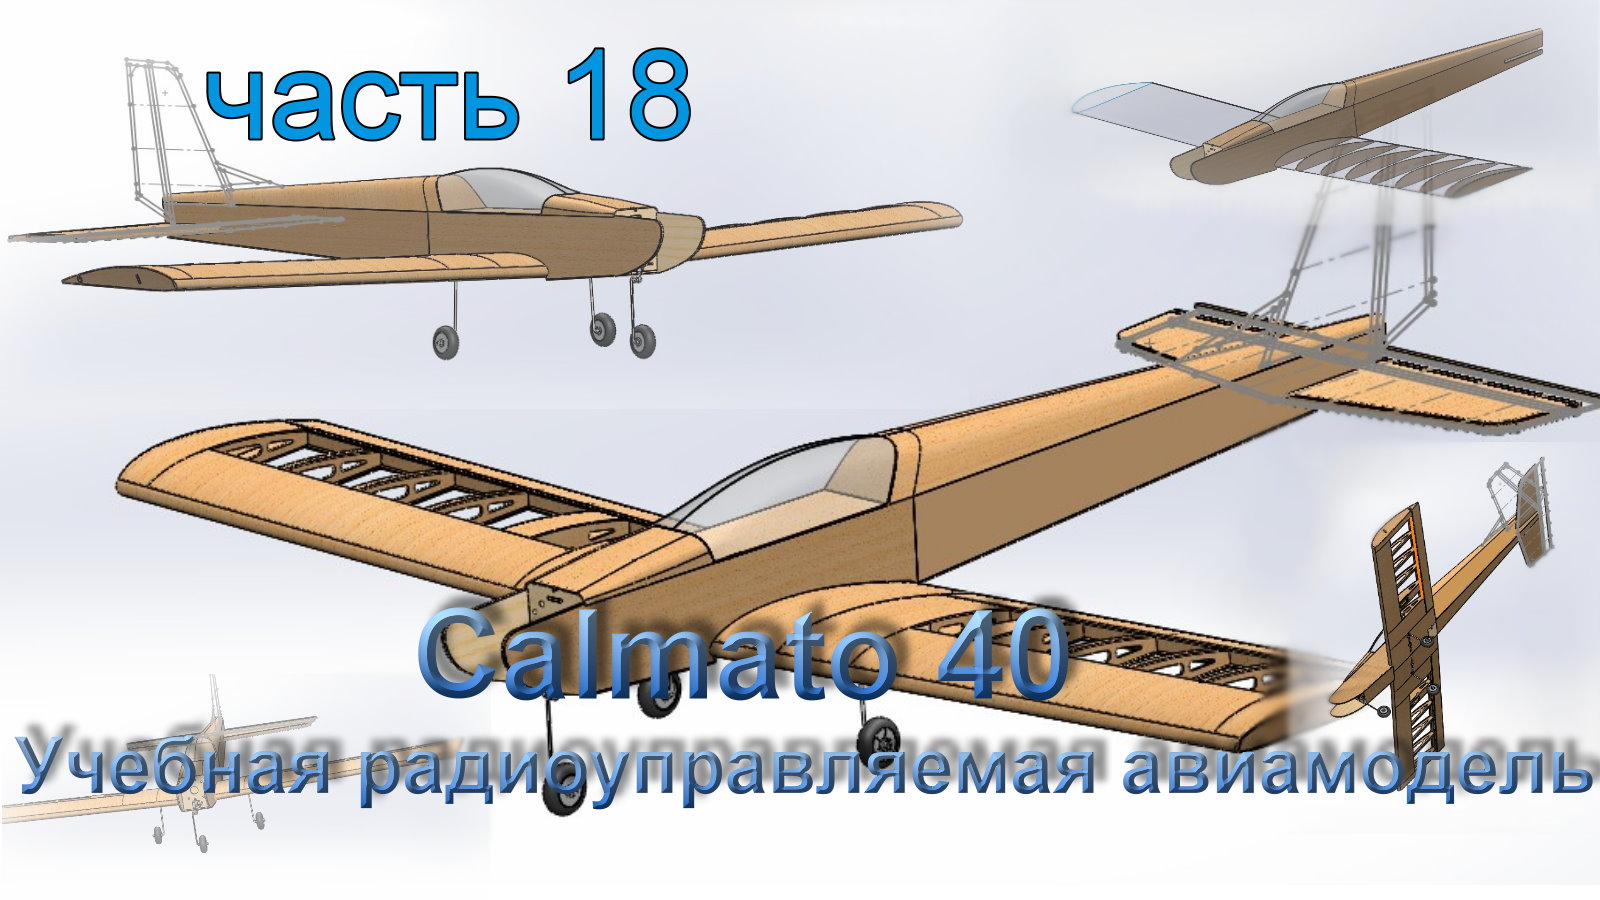 Учебная радиоуправляемая авиамодель Calmato 40 (часть 18)